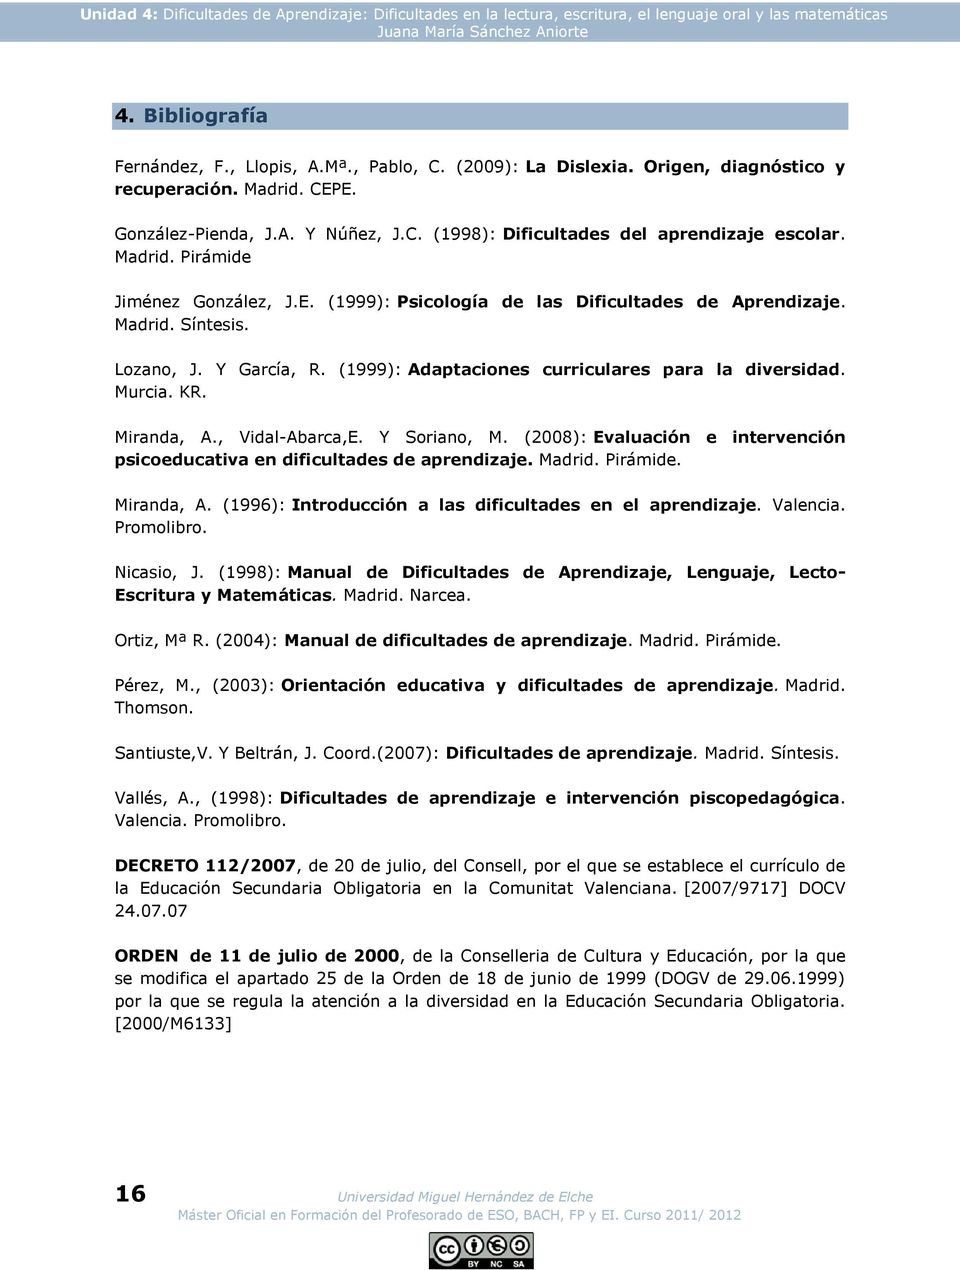 E. (1999): Psicología de las Dificultades de Aprendizaje. Madrid. Síntesis. Lozano, J. Y García, R. (1999): Adaptaciones curriculares para la diversidad. Murcia. KR. Miranda, A., Vidal-Abarca,E.